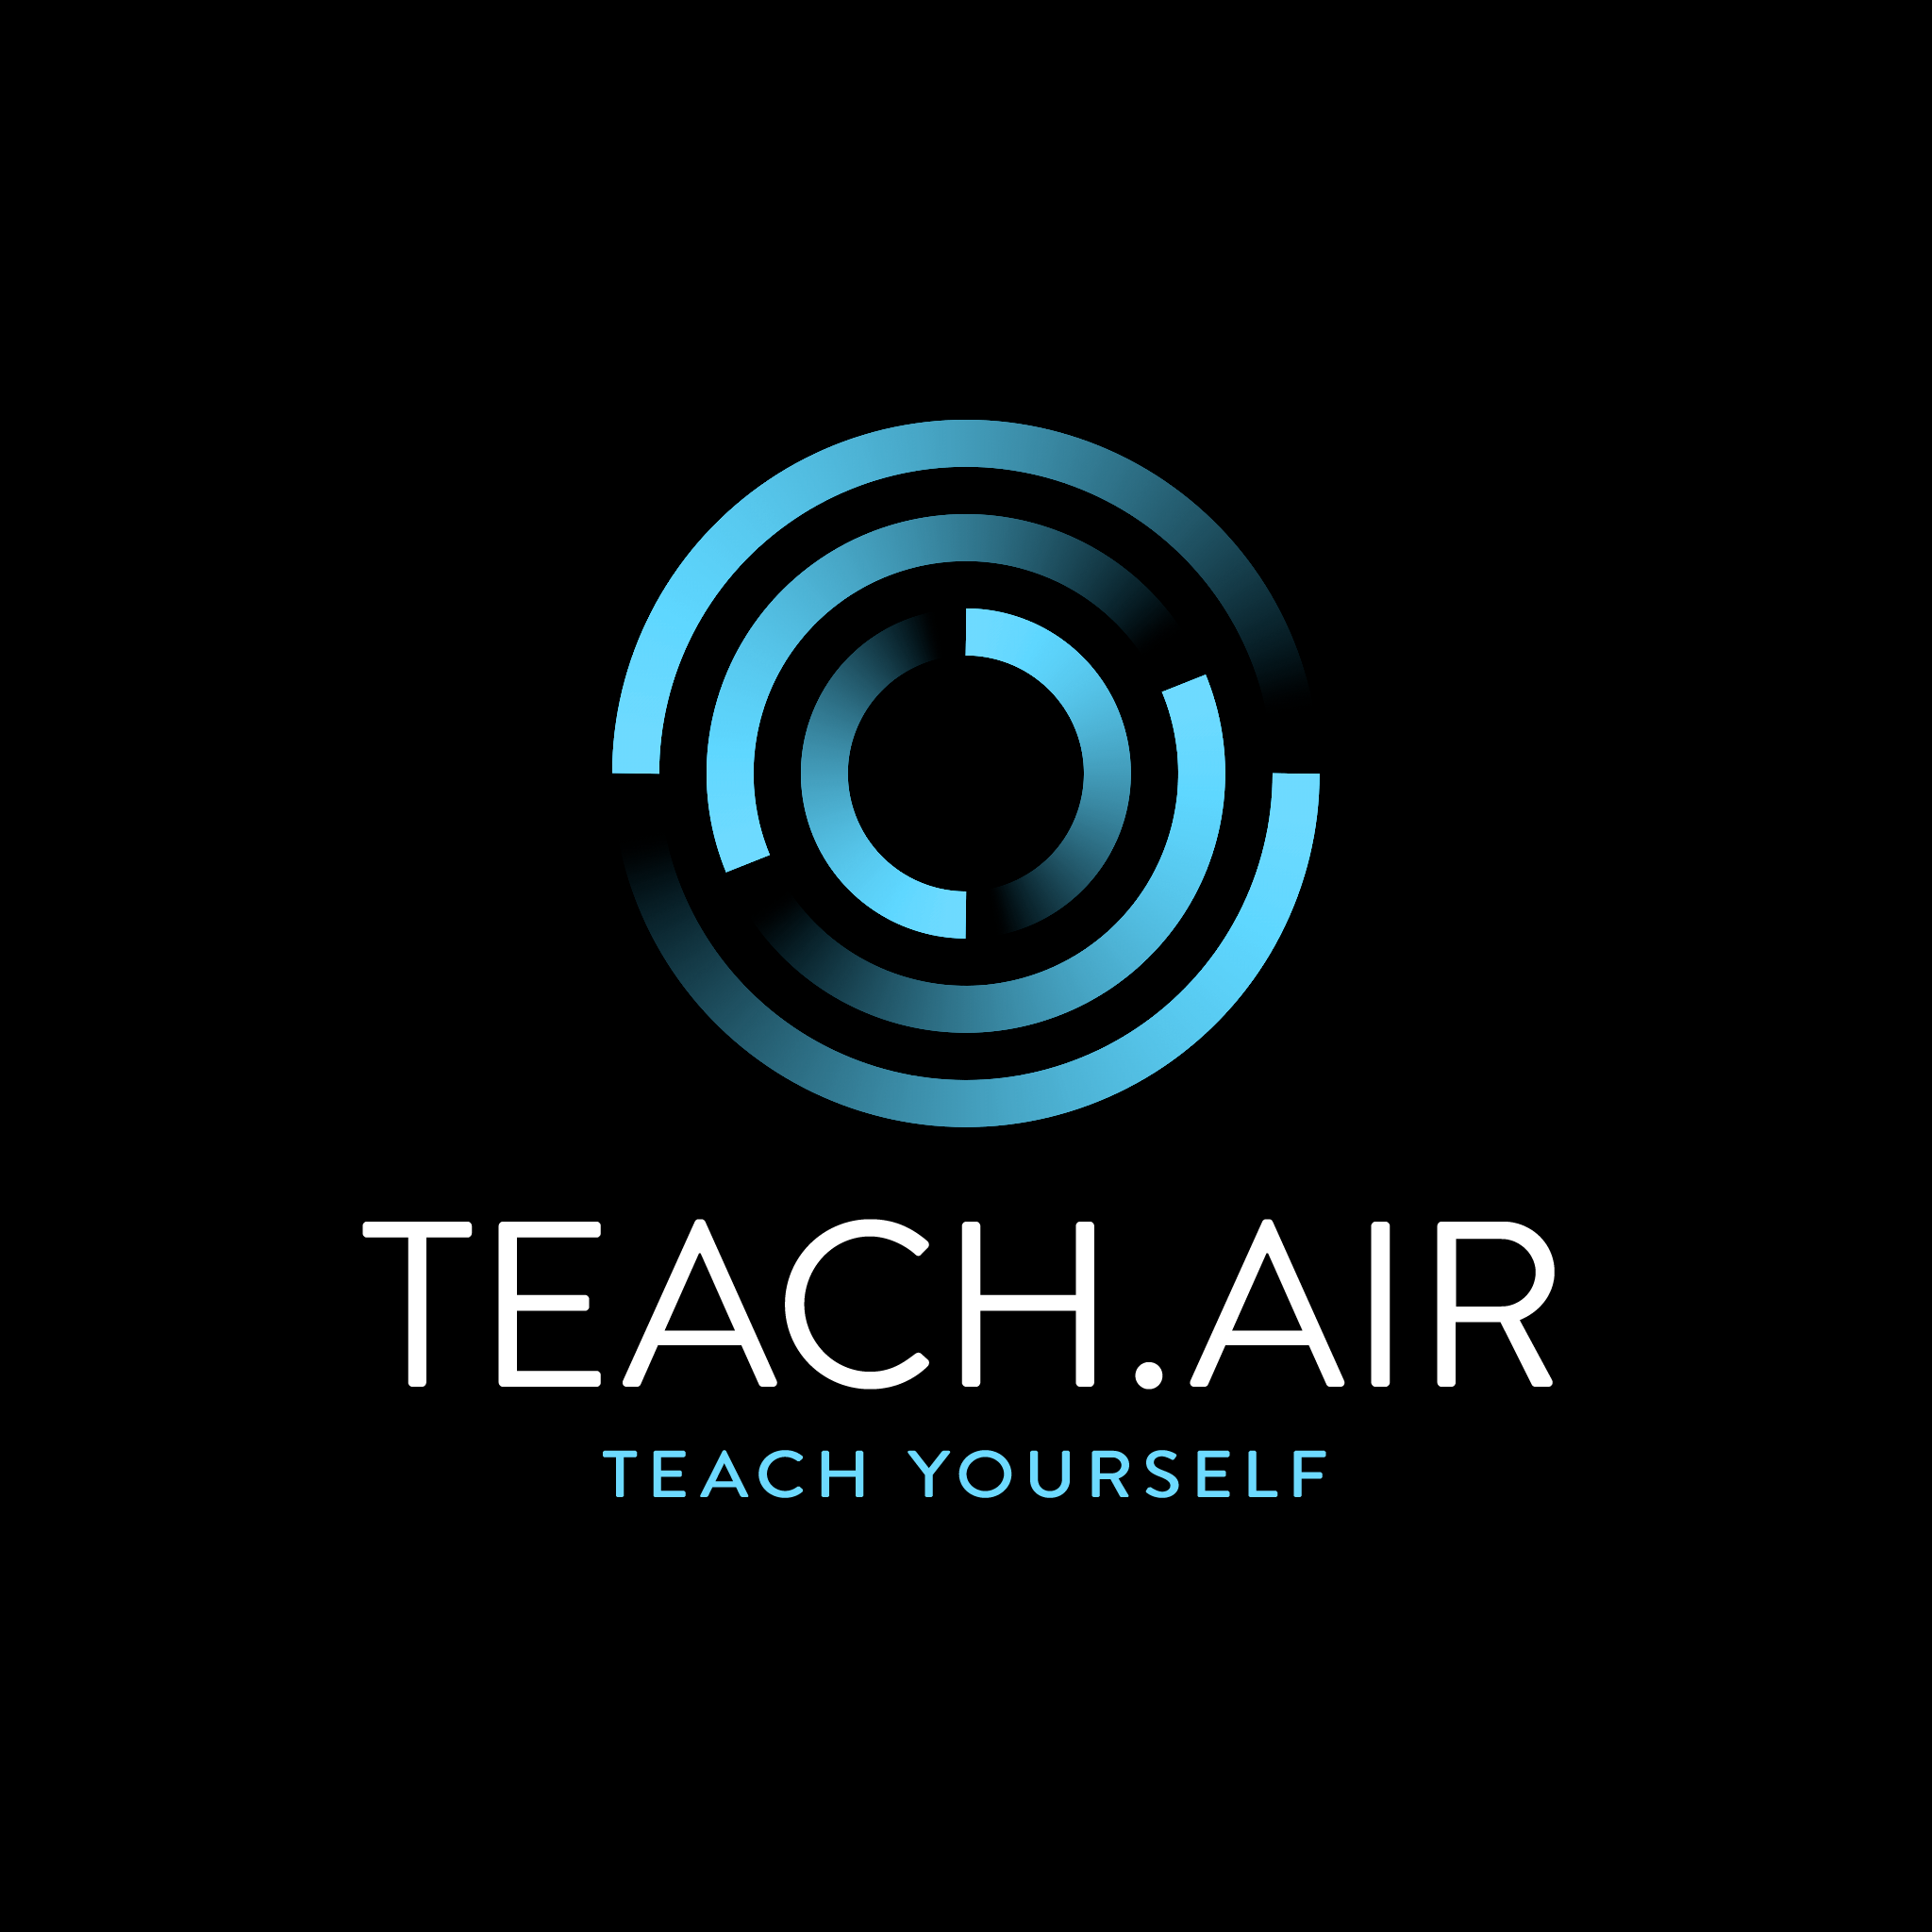 (c) Teachair.shop